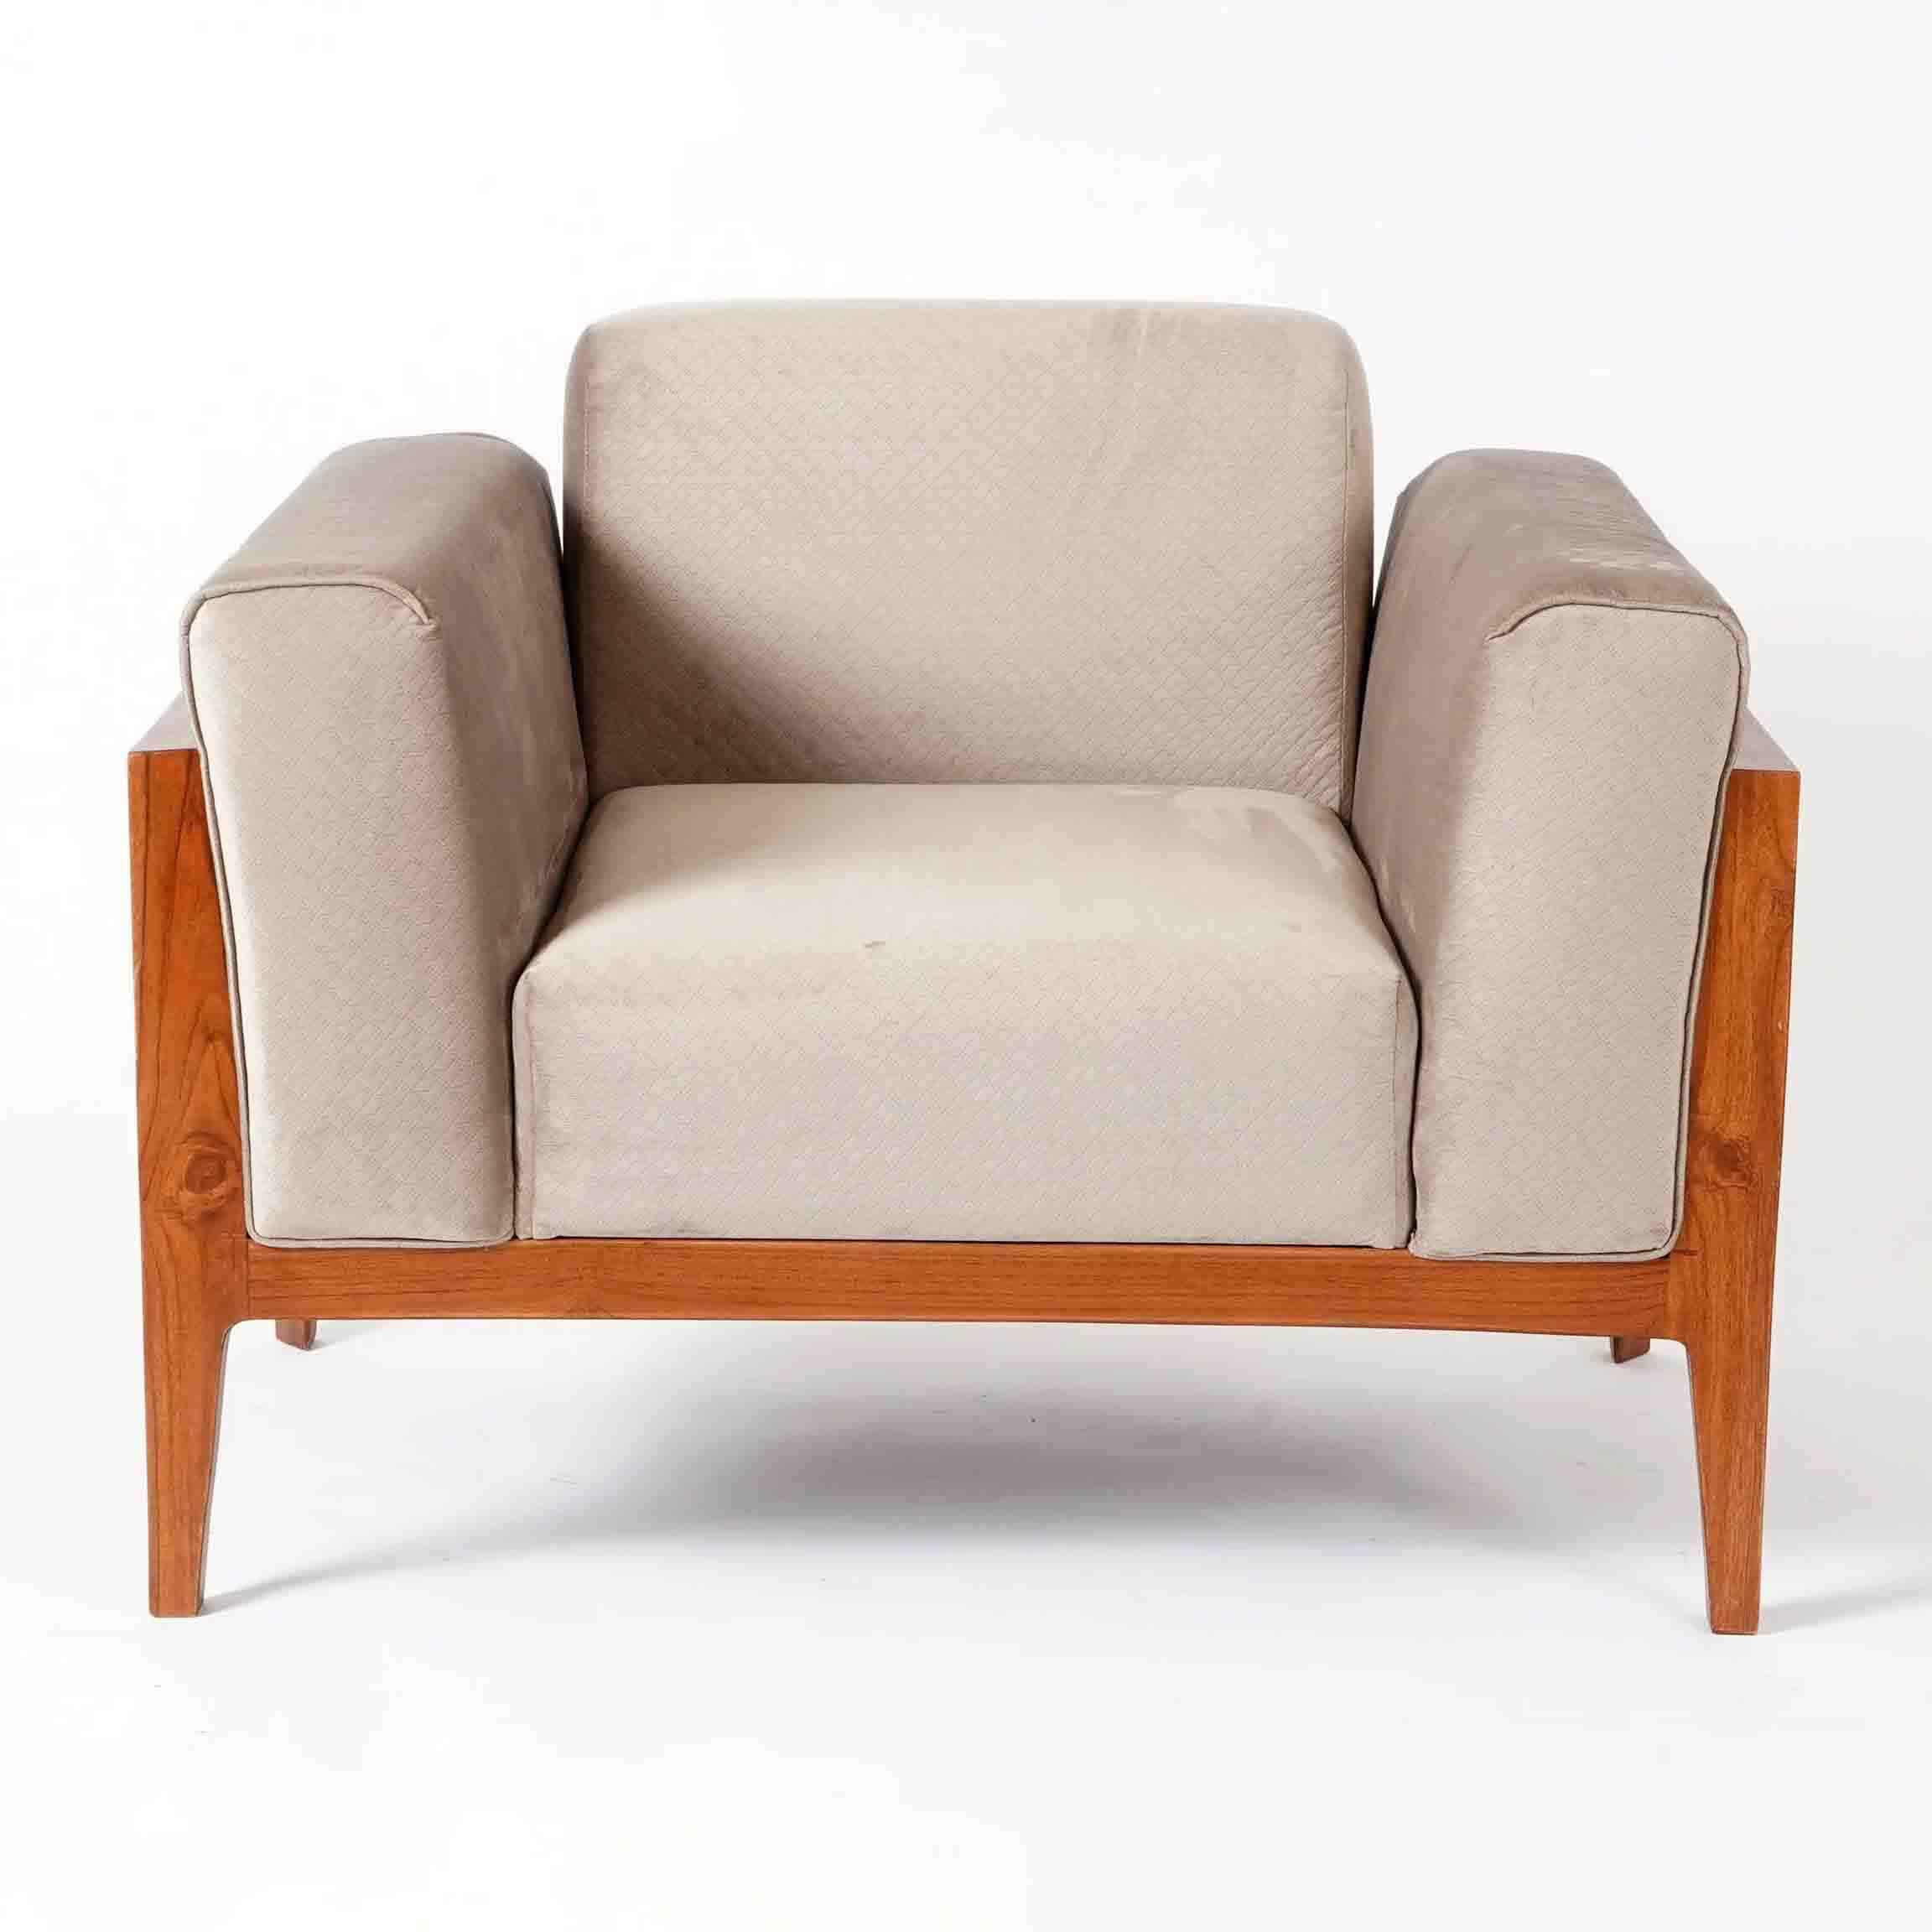 Dawson Chaise Sectional Sofa